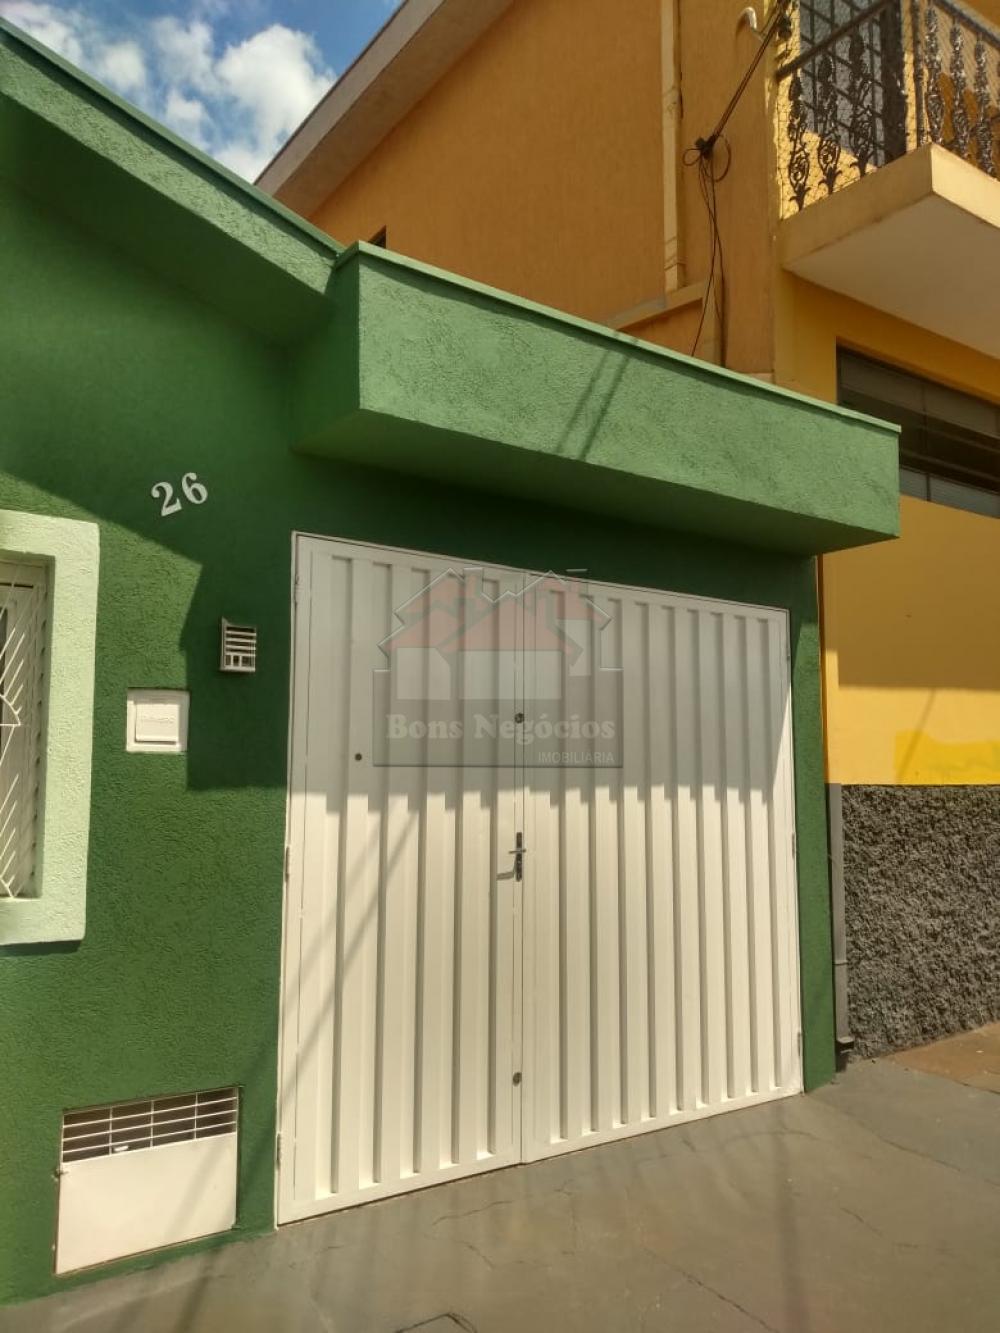 Alugar Casa / Padrão em Ribeirão Preto R$ 1.500,00 - Foto 2